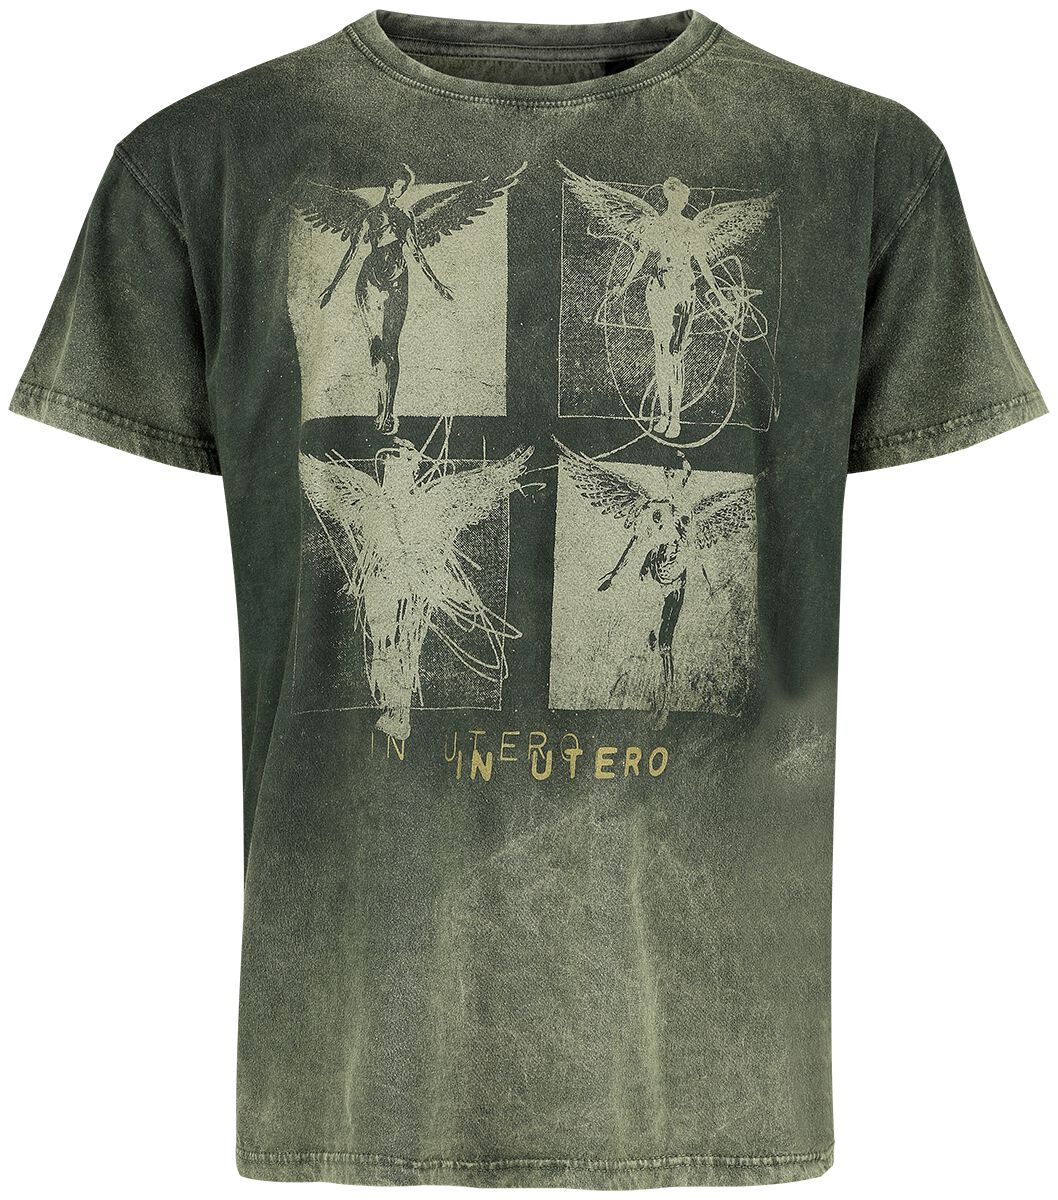 Nirvana T-Shirt - In Utero Collage - S - für Männer - Größe S - grün  - Lizenziertes Merchandise!